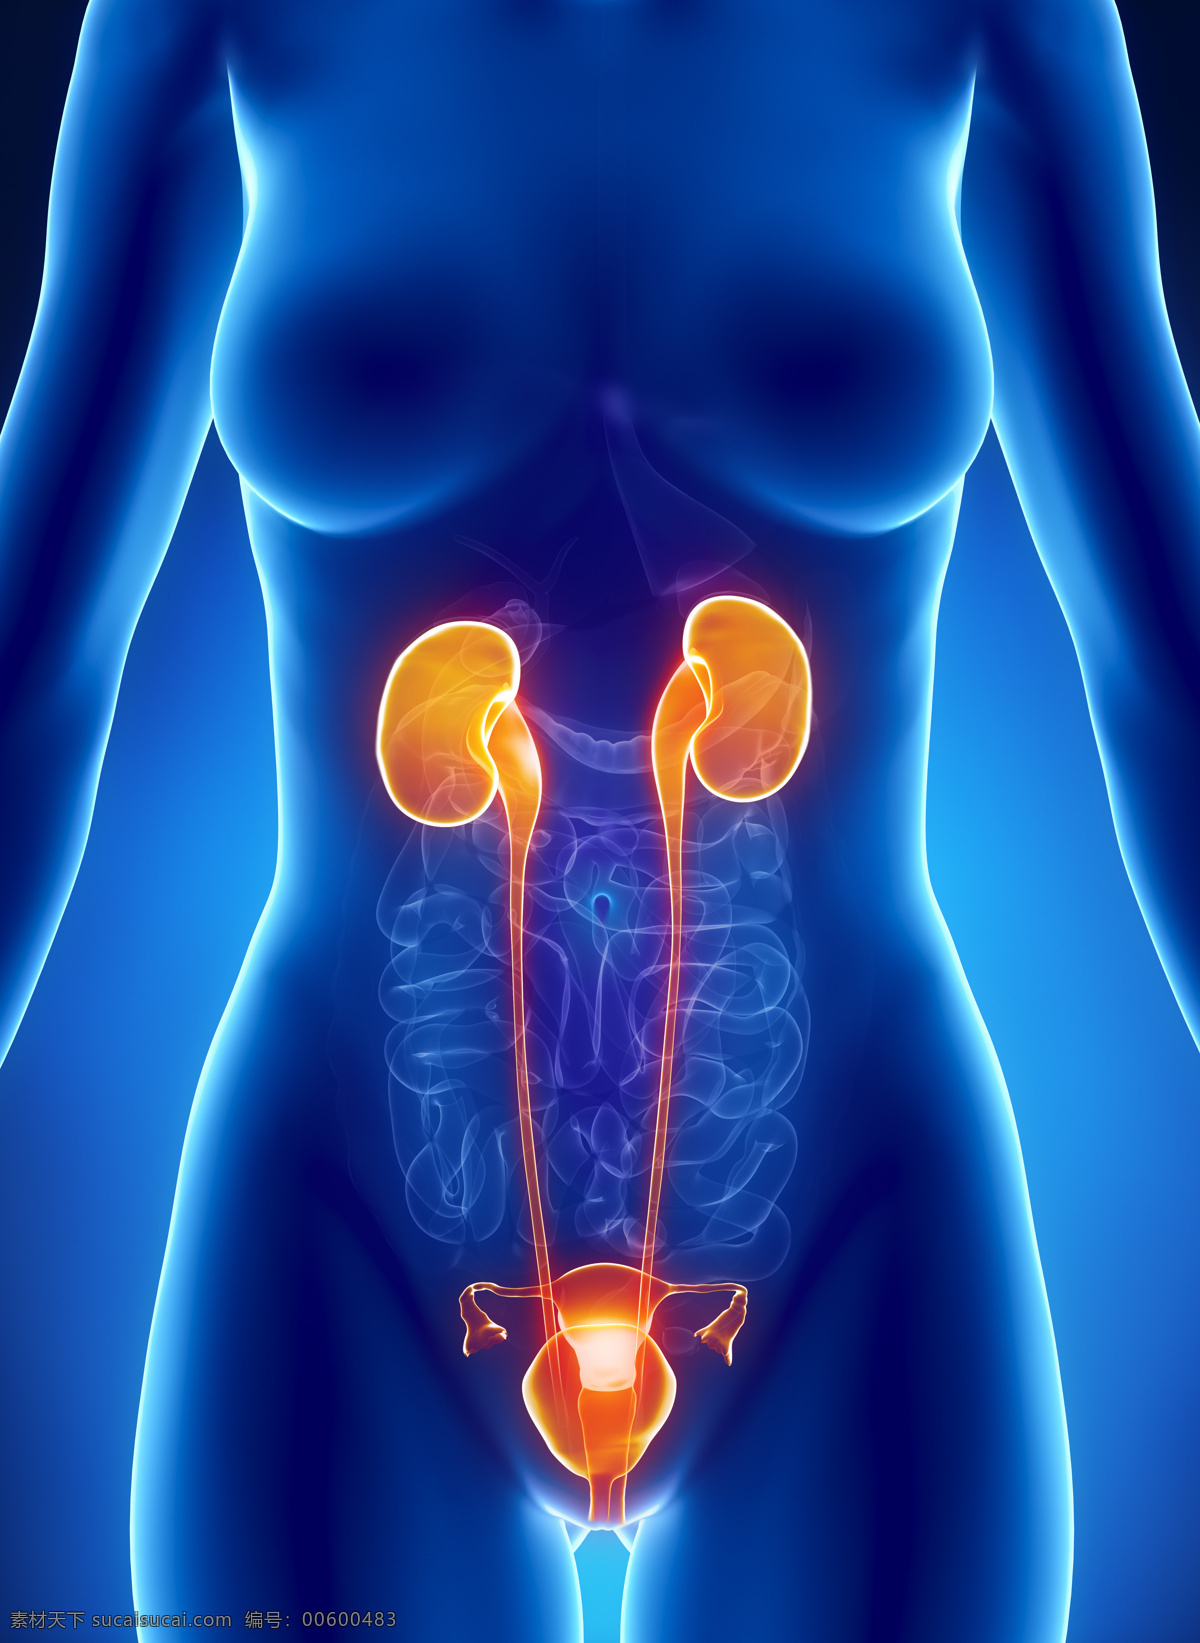 女性 肾 器官 生殖 女性肾器官 子宫器官 女性人体器官 医疗科学 医学 人体器官图 人物图片